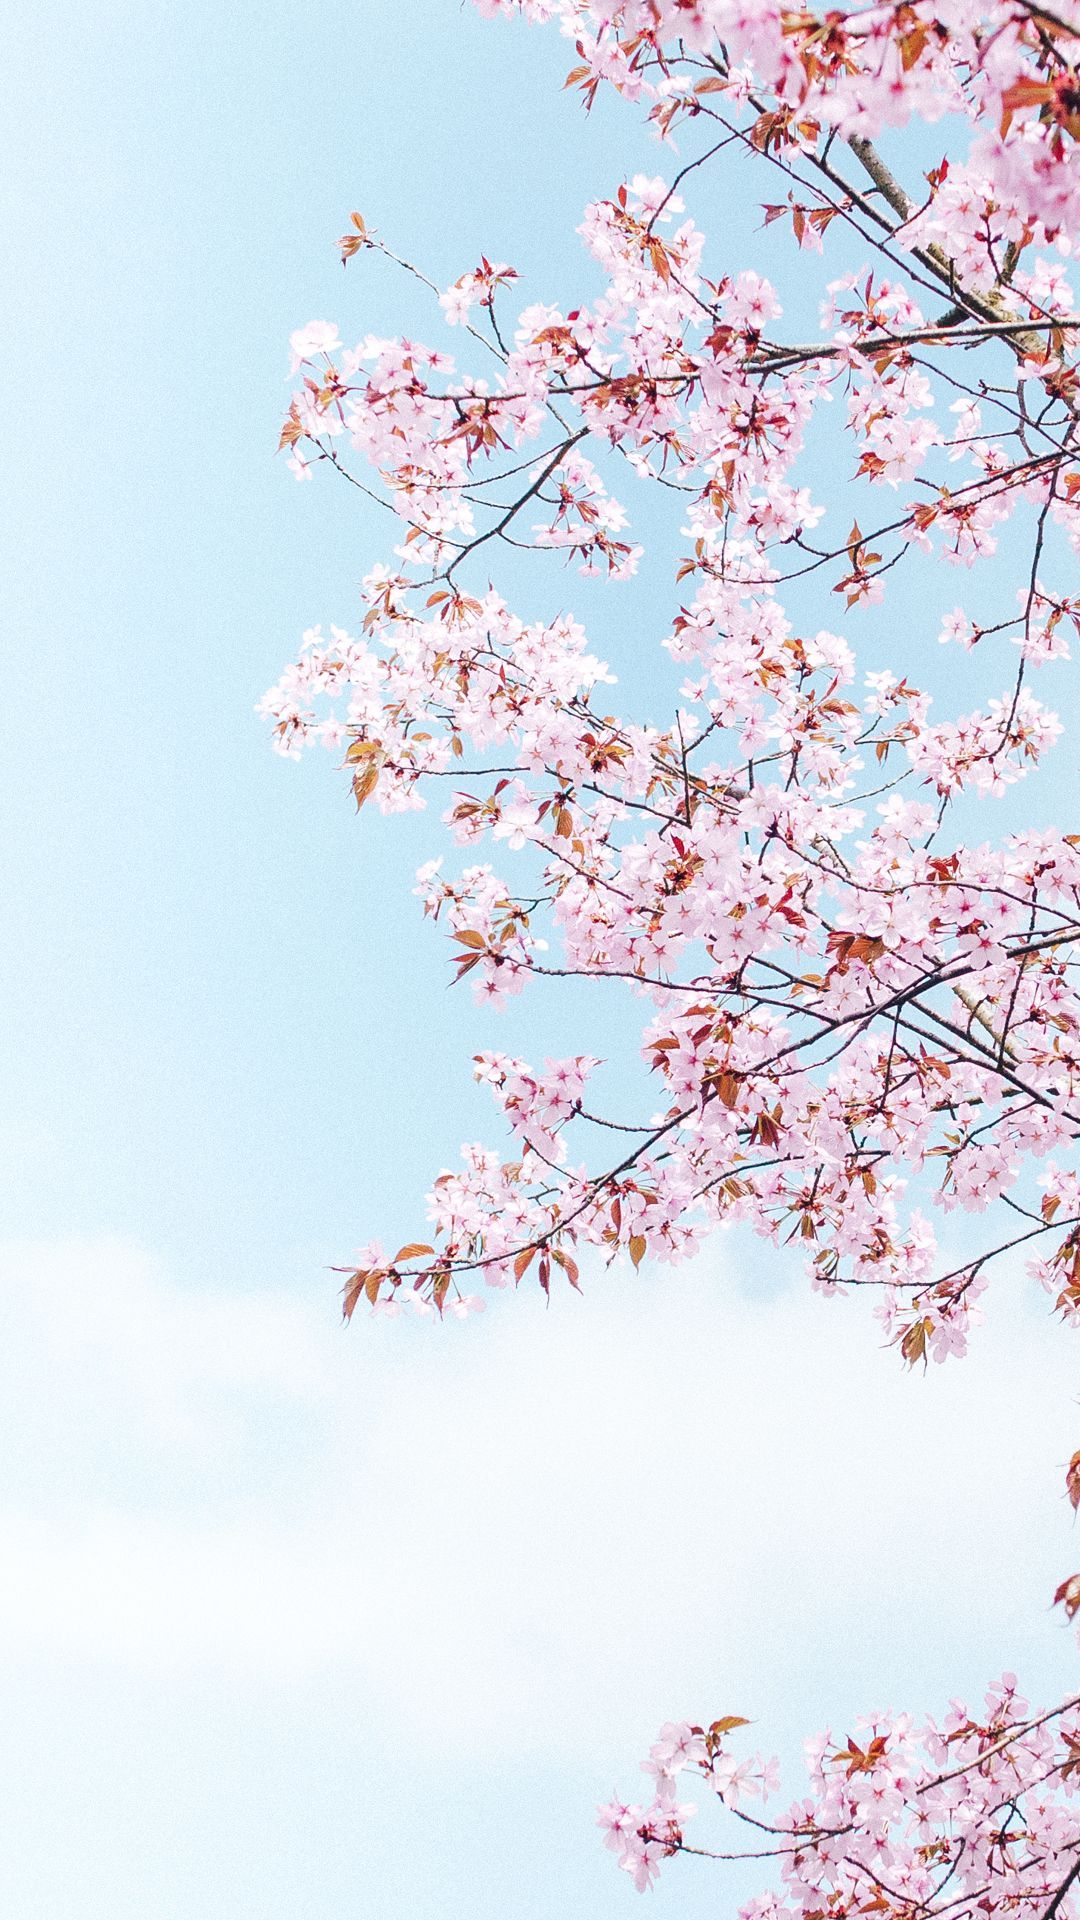 عکس منحصر به فرد و دیدنی از شکوفه های قشنگ 